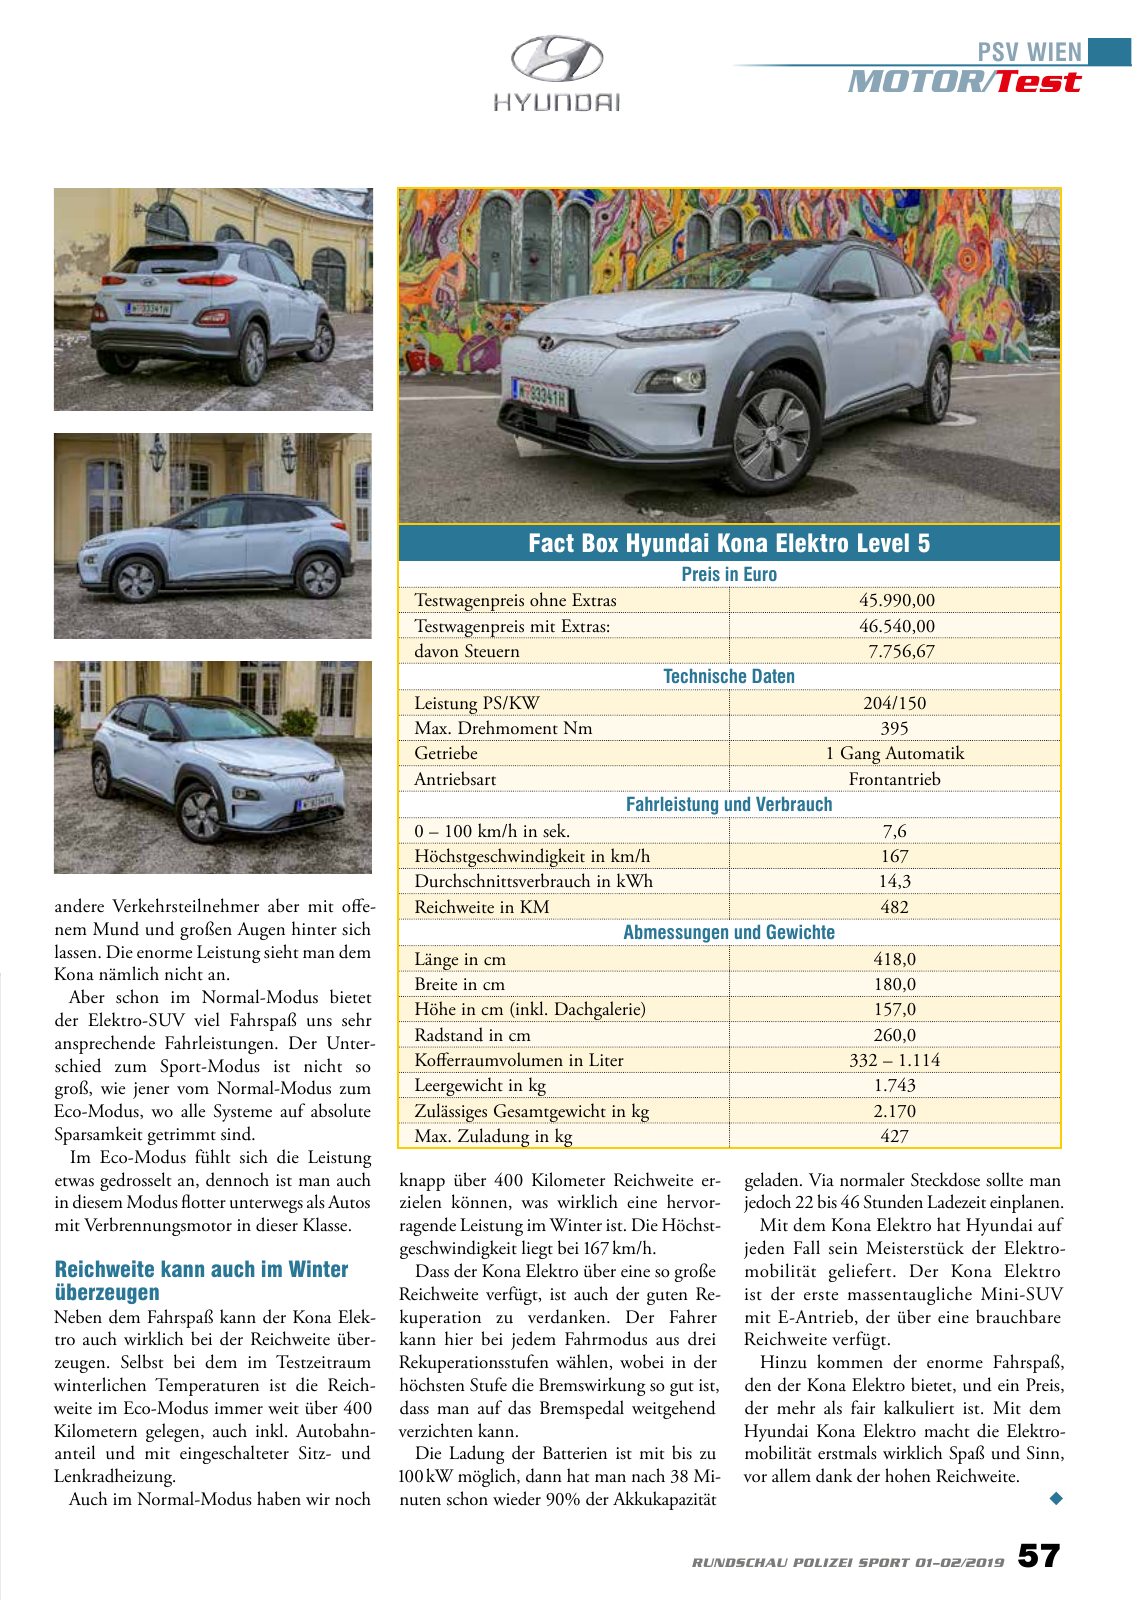 Vorschau Rundschau Polizei Sport 01-02/2019 Seite 57